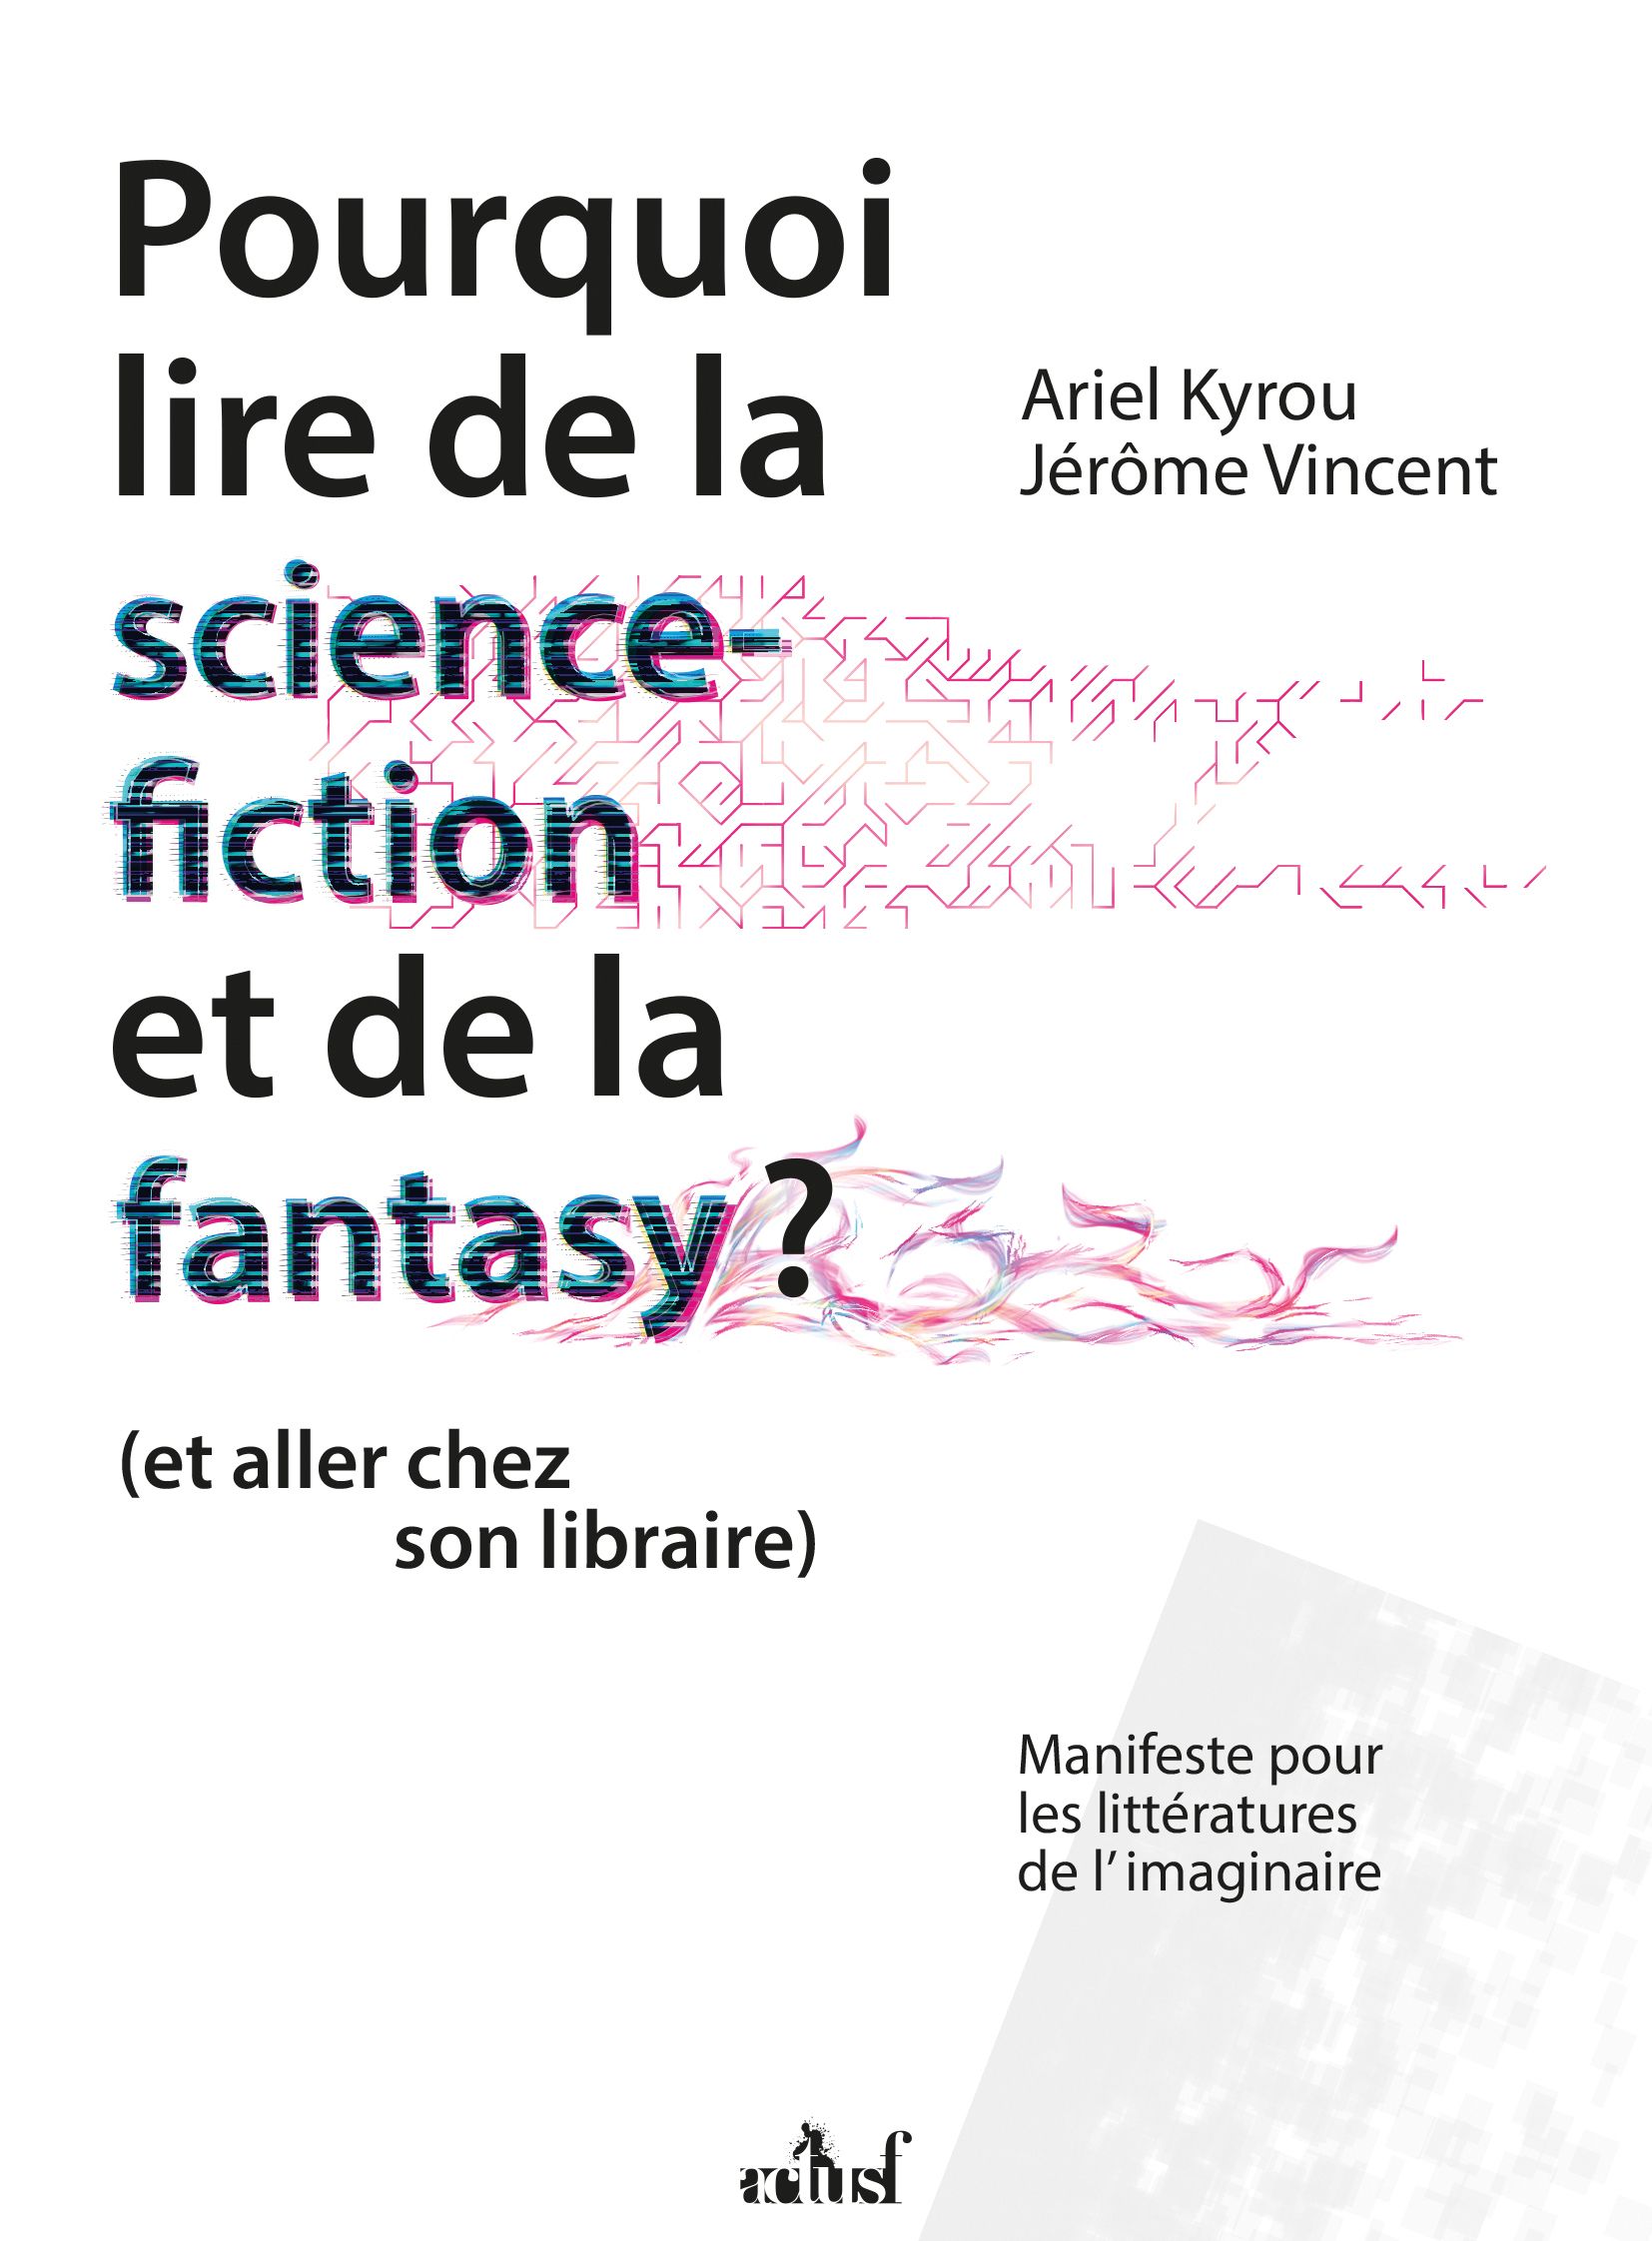 Pourquoi lire de la science-fiction et de la fantasy ? d’Ariel Kryou et Jérôme Vincent